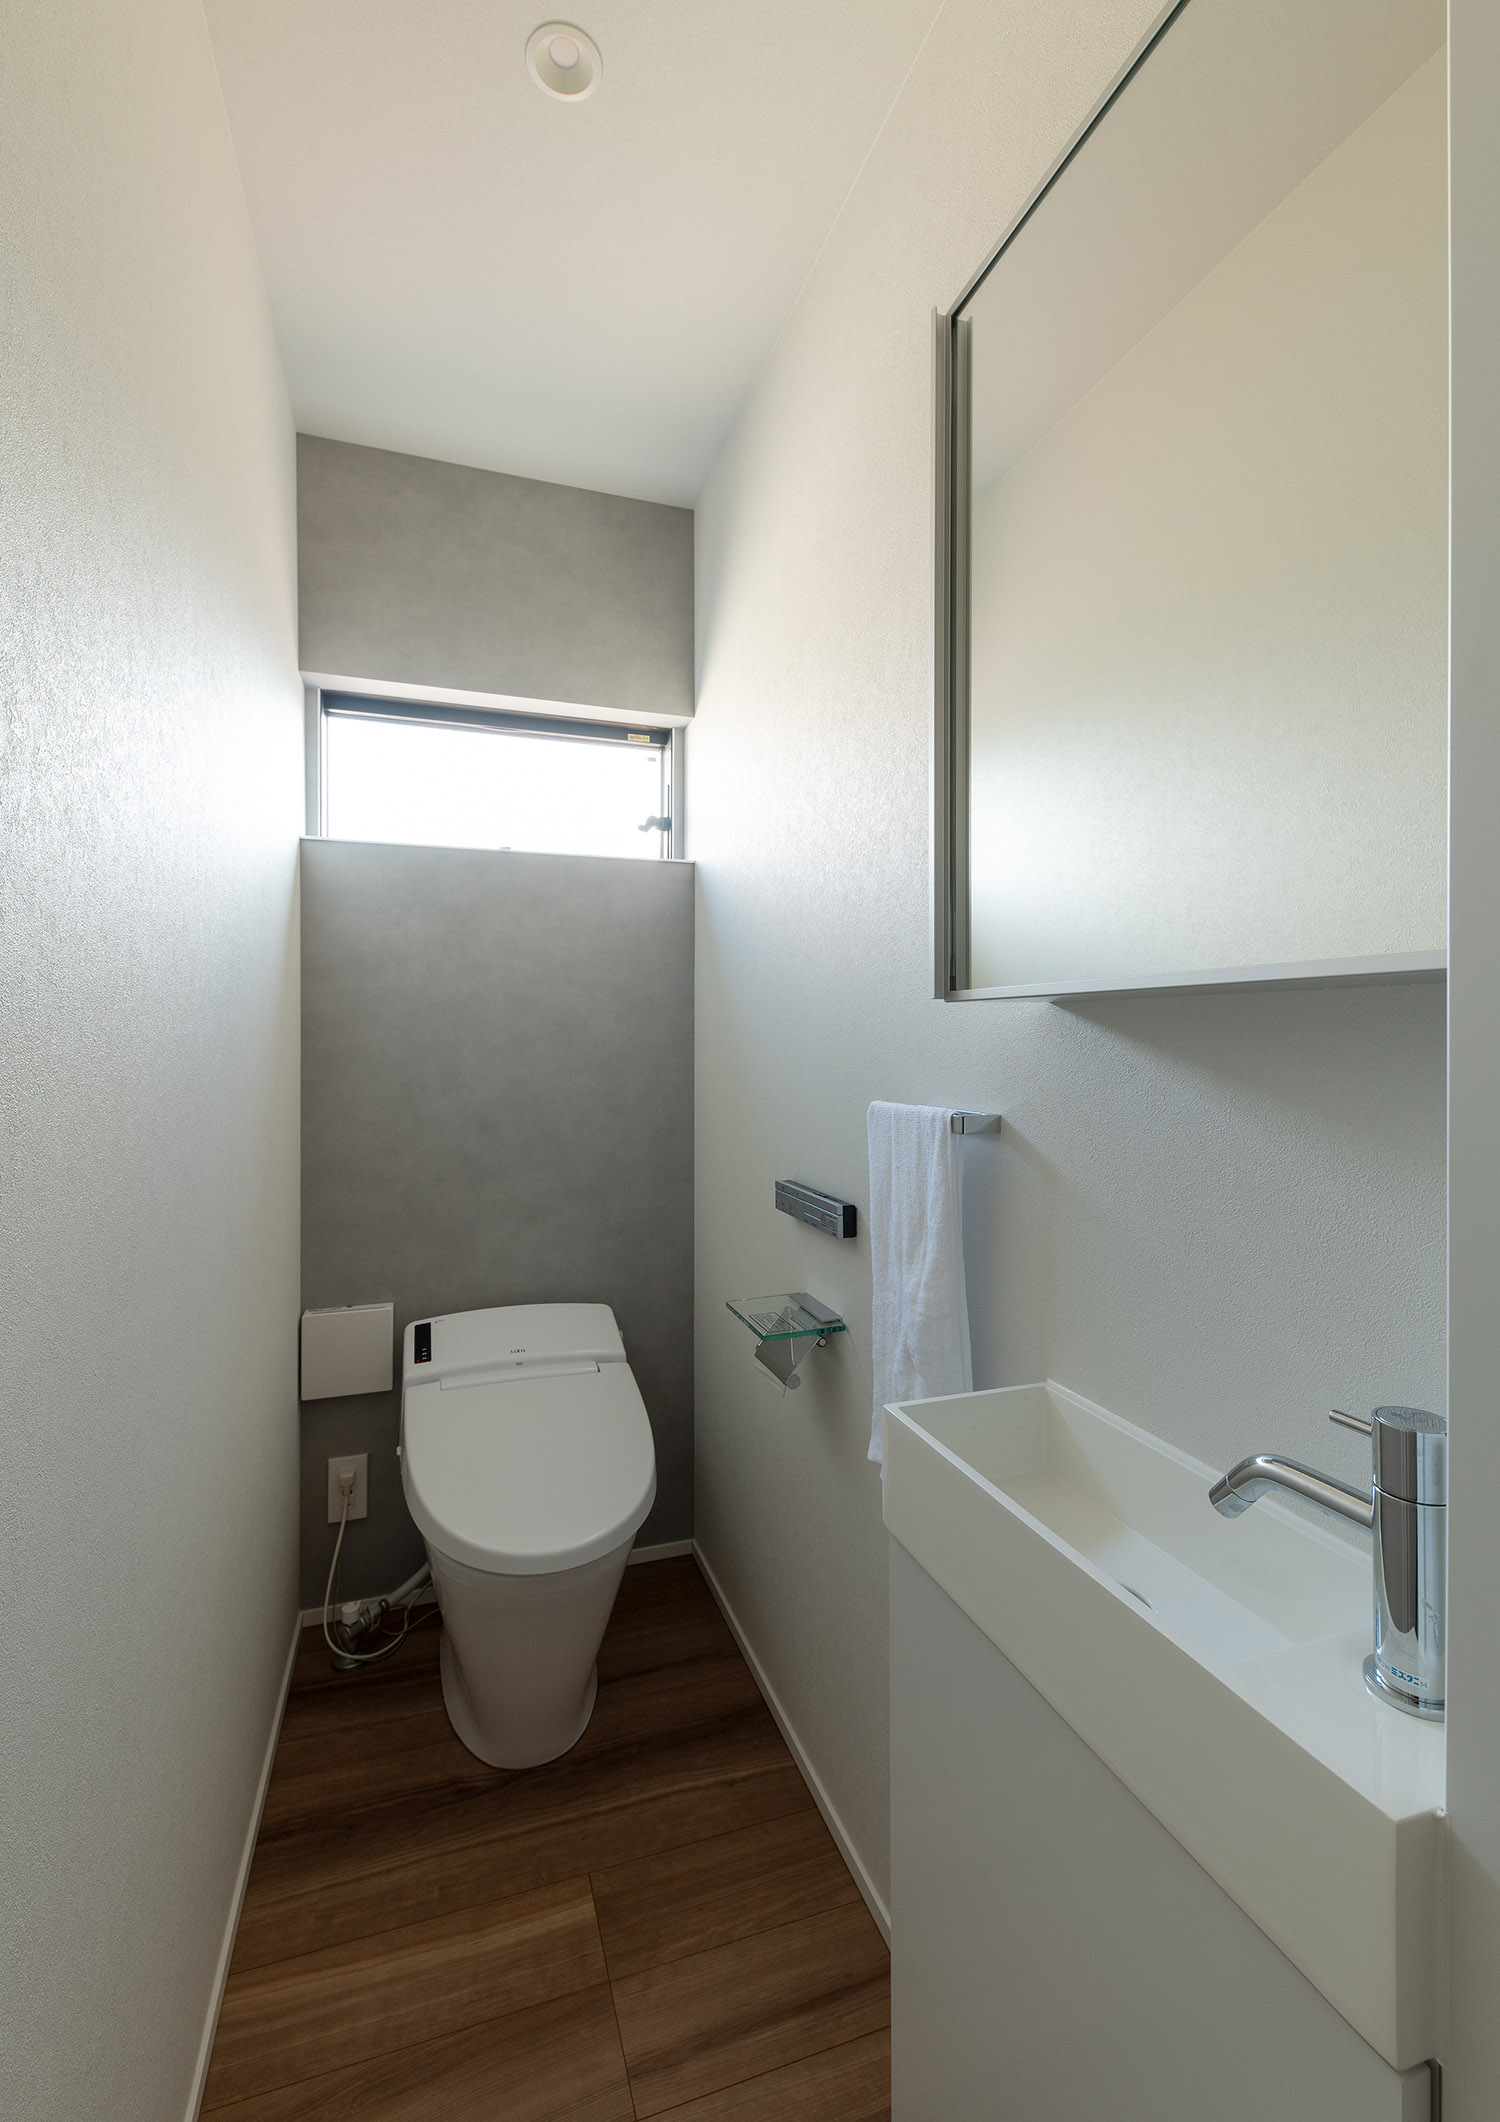 鏡付きの薄型手洗いを設けたトイレ・デザイン住宅